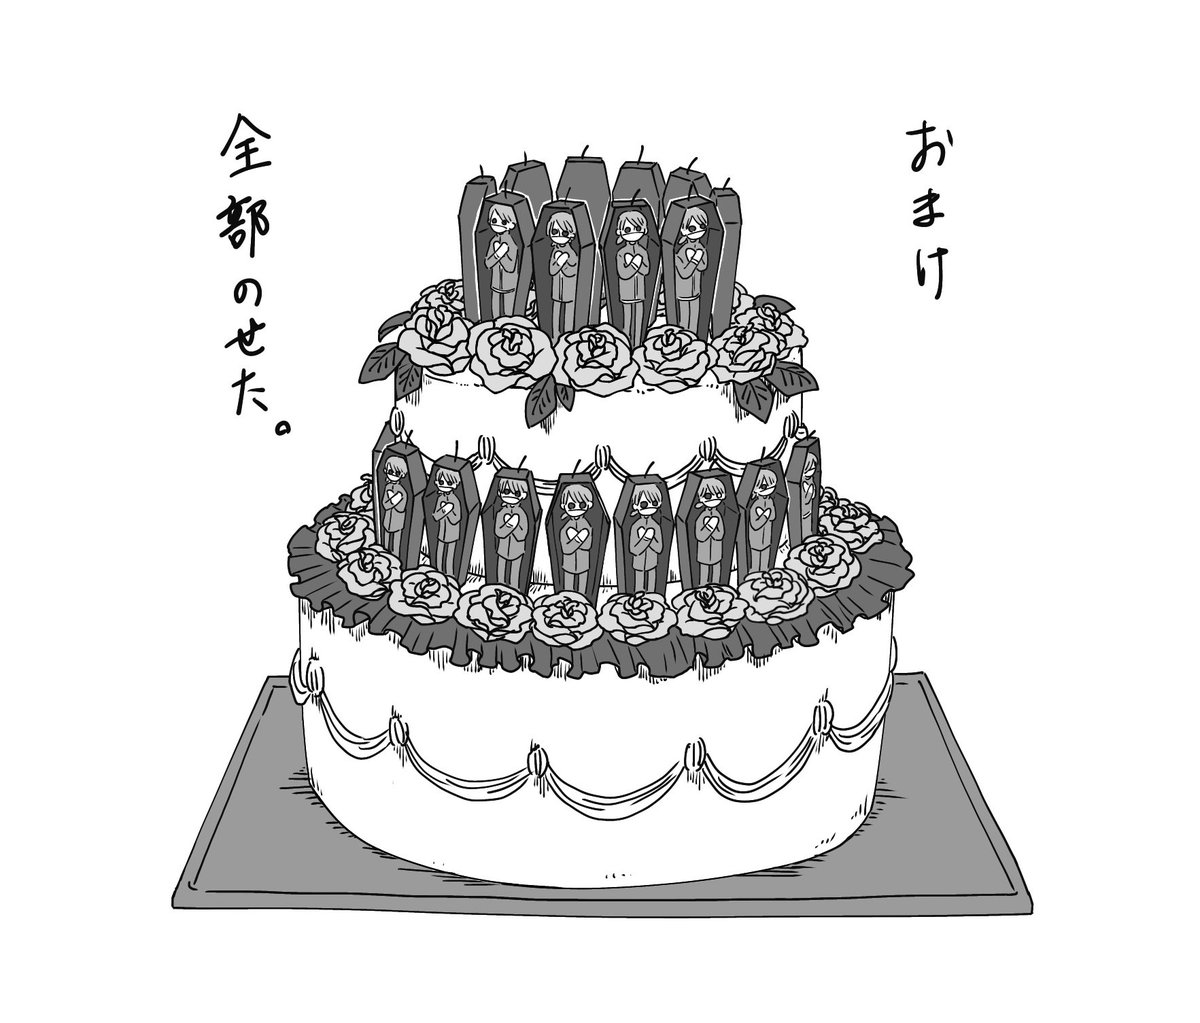 #イソップ・カール誕生日2022
カール誕生日おめでとう!!
今年は二段ケーキでお祝いです。

フィリップのトラウマに関しては過去絵から…(リプ参照) 